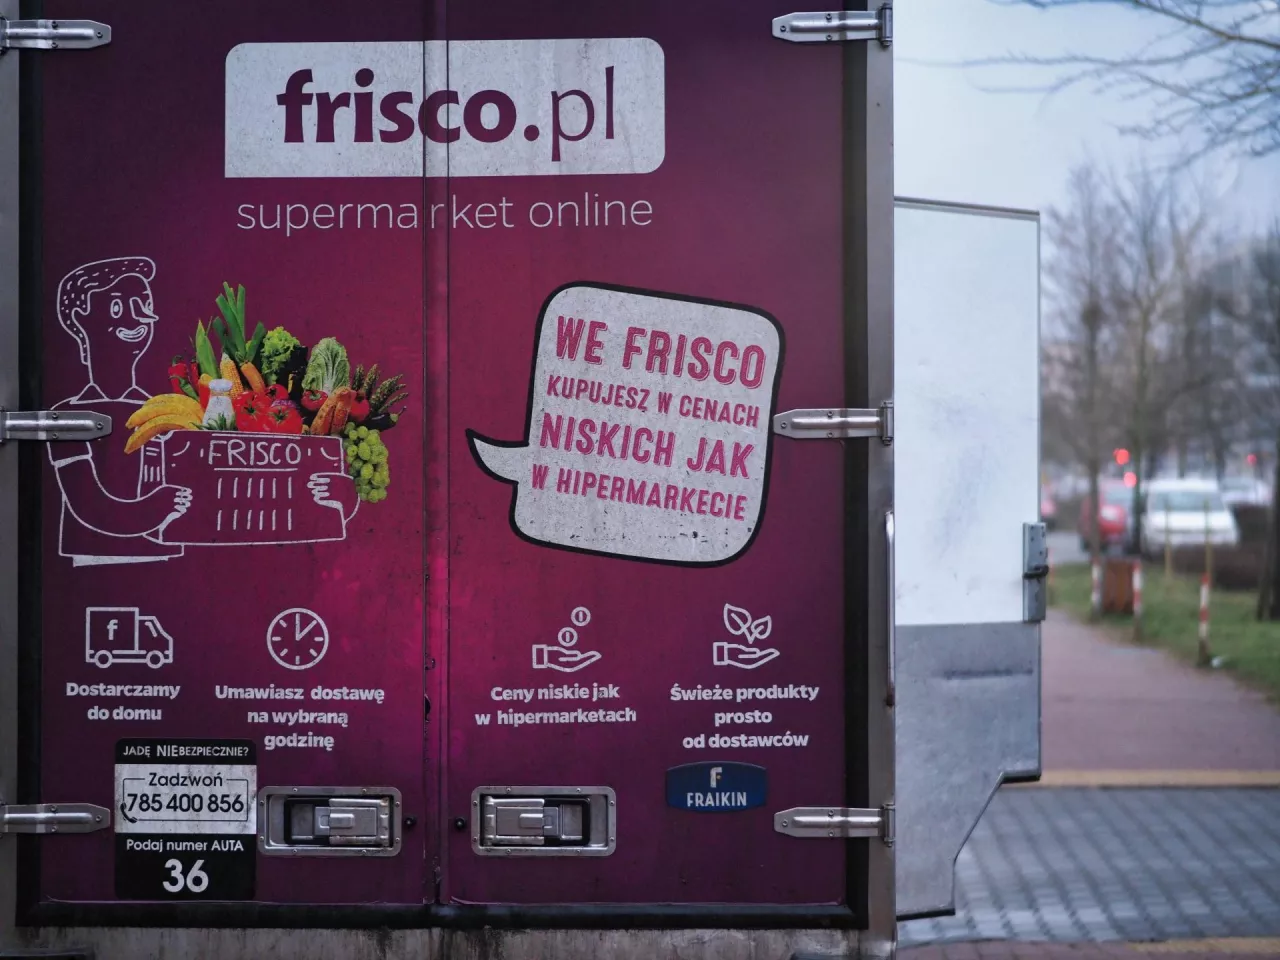 W 2021 roku przychody Frisco.pl wyniosły 278,3 mln zł (fot. ŁR/wiadomoscihandlowe.pl)